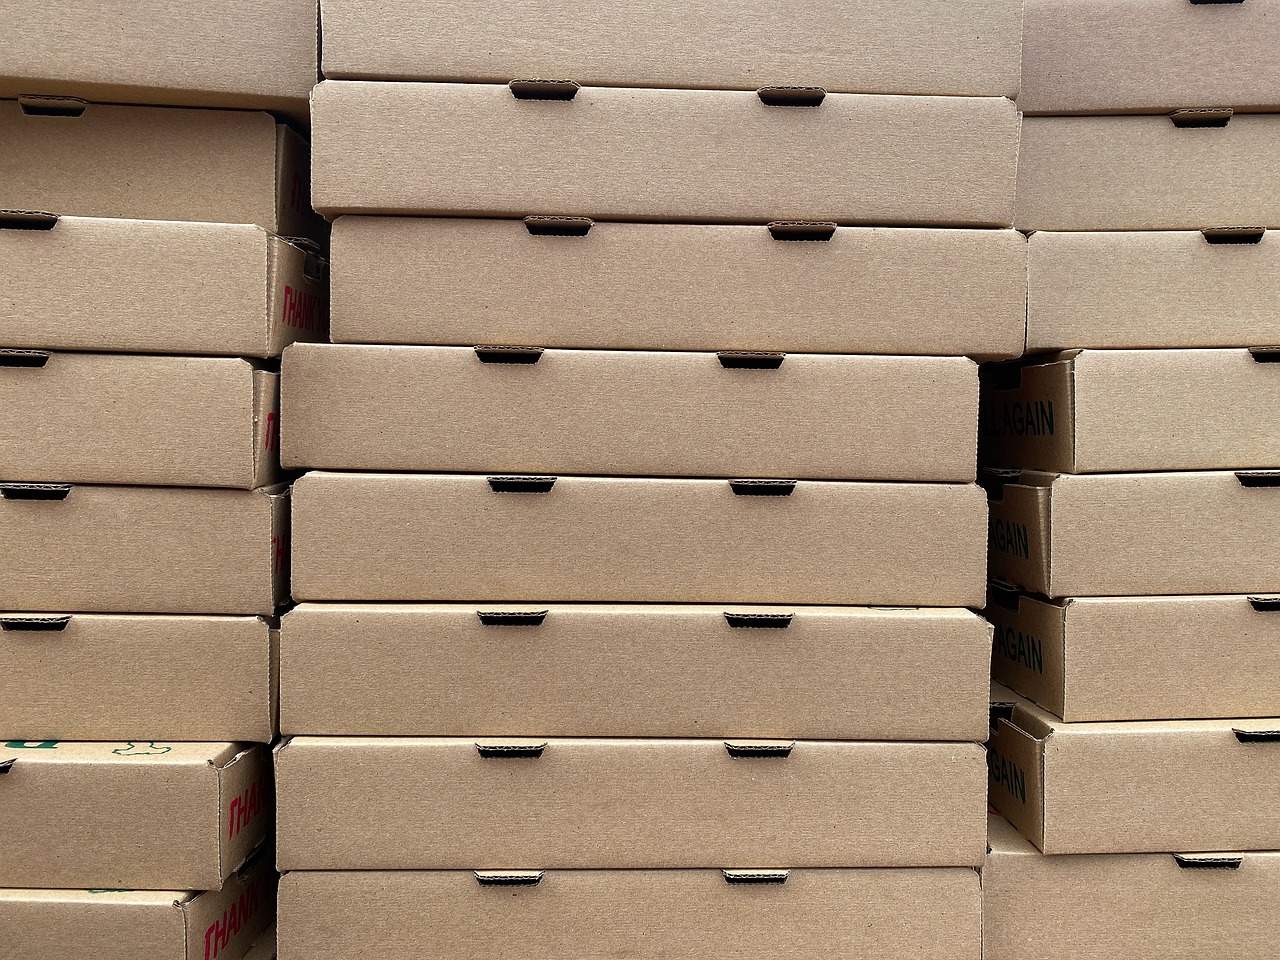 Pizzakartons ＂statt＂ Blumenteppich